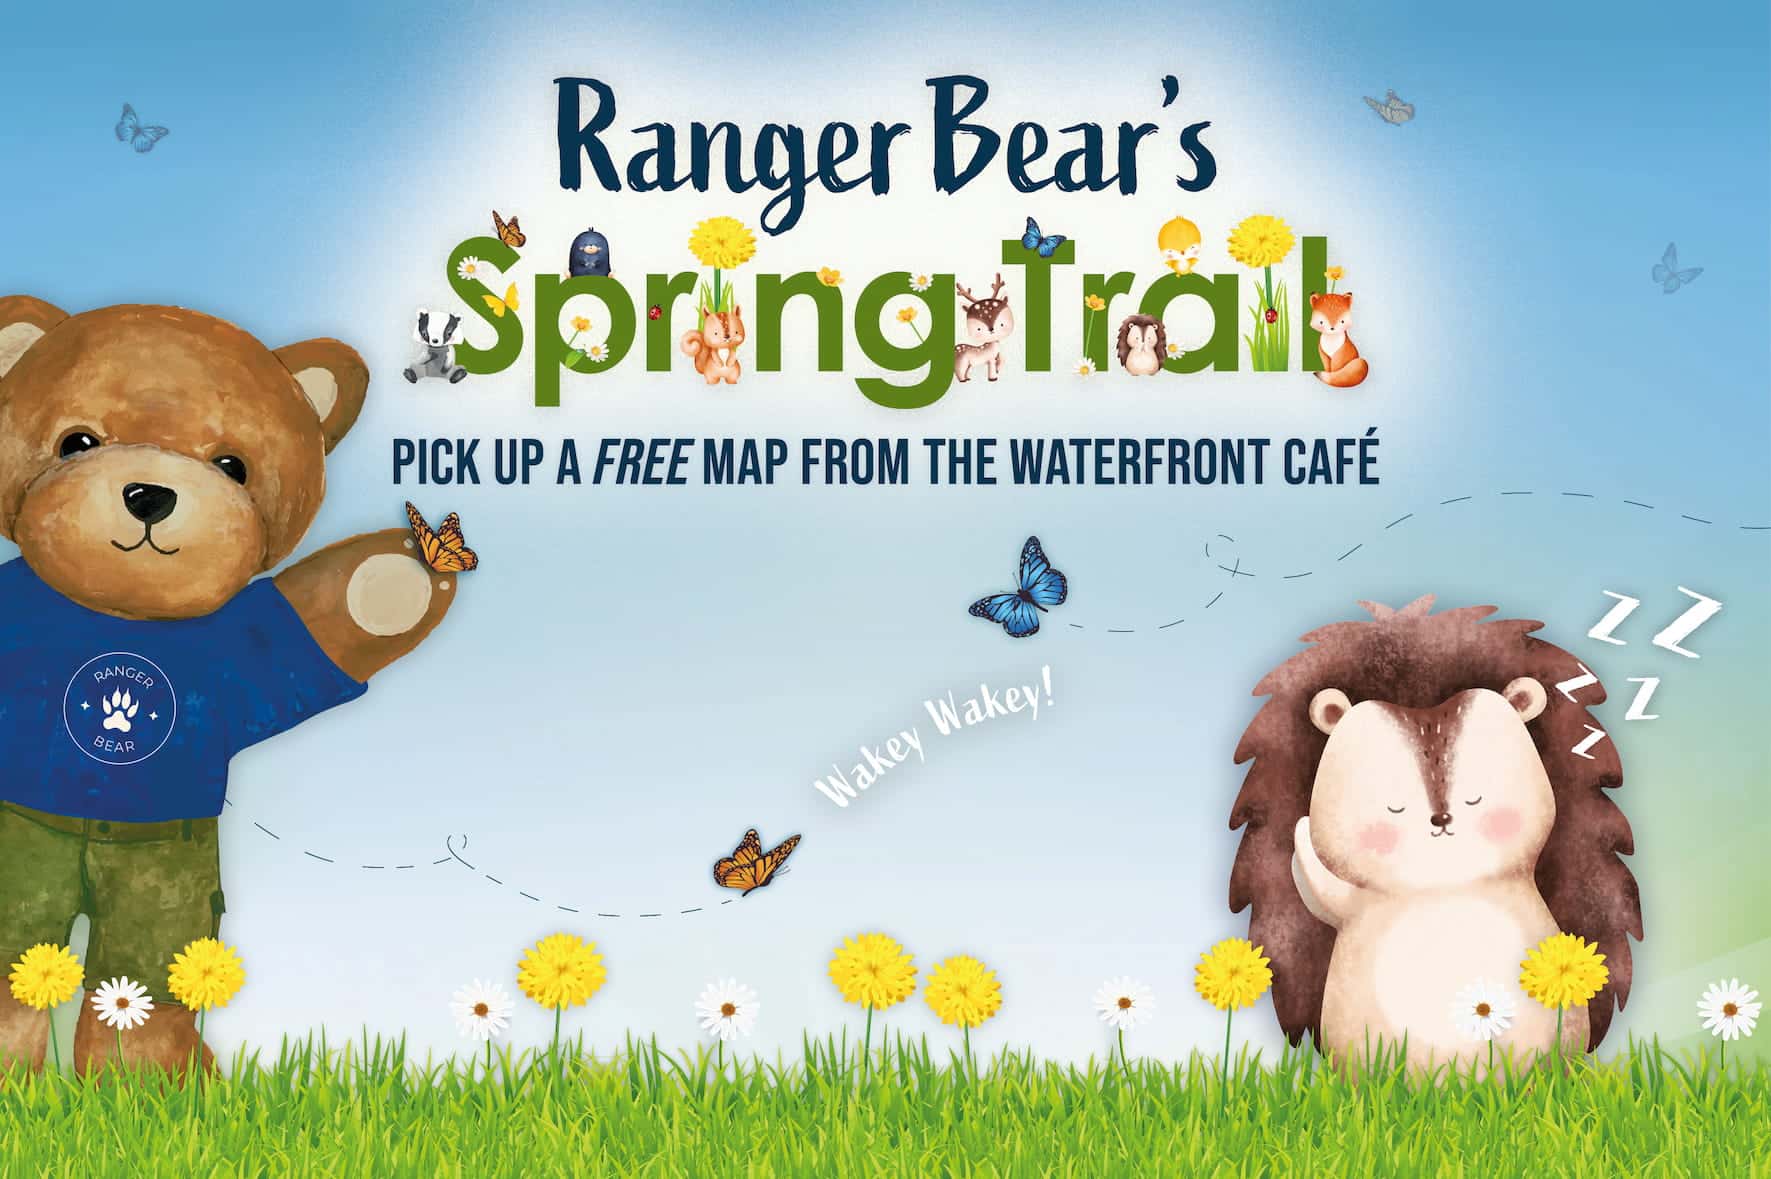 Ranger Bear's Spring Trail